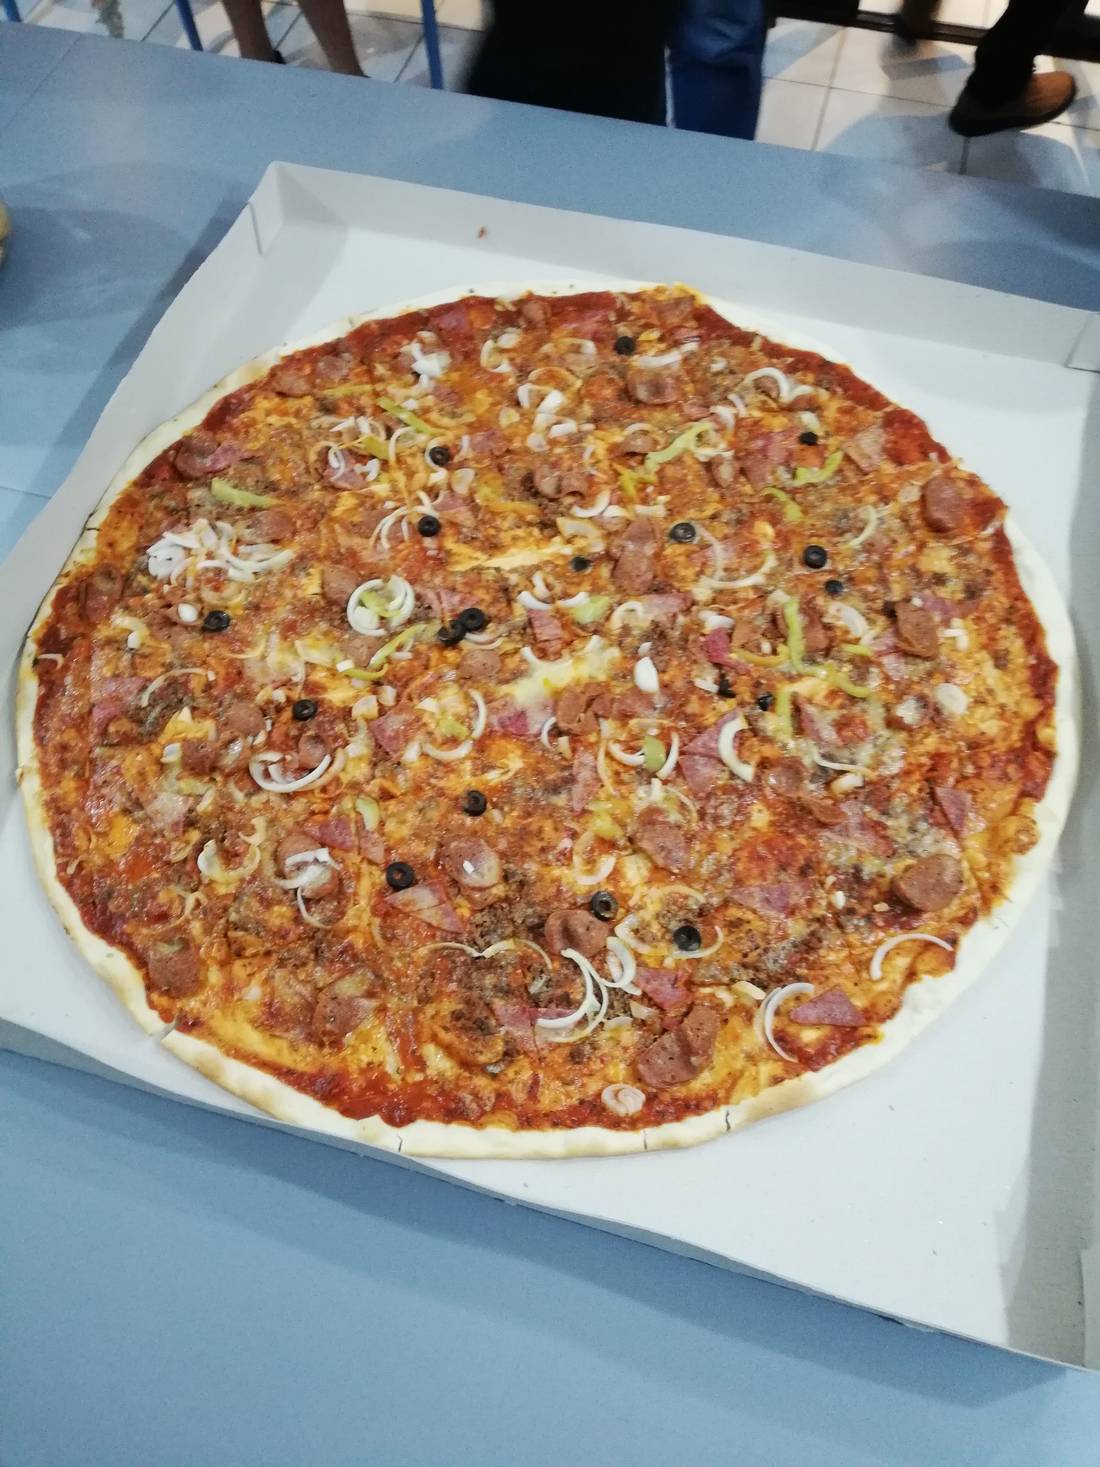 XXL pizza from Greenoz Pizzaria